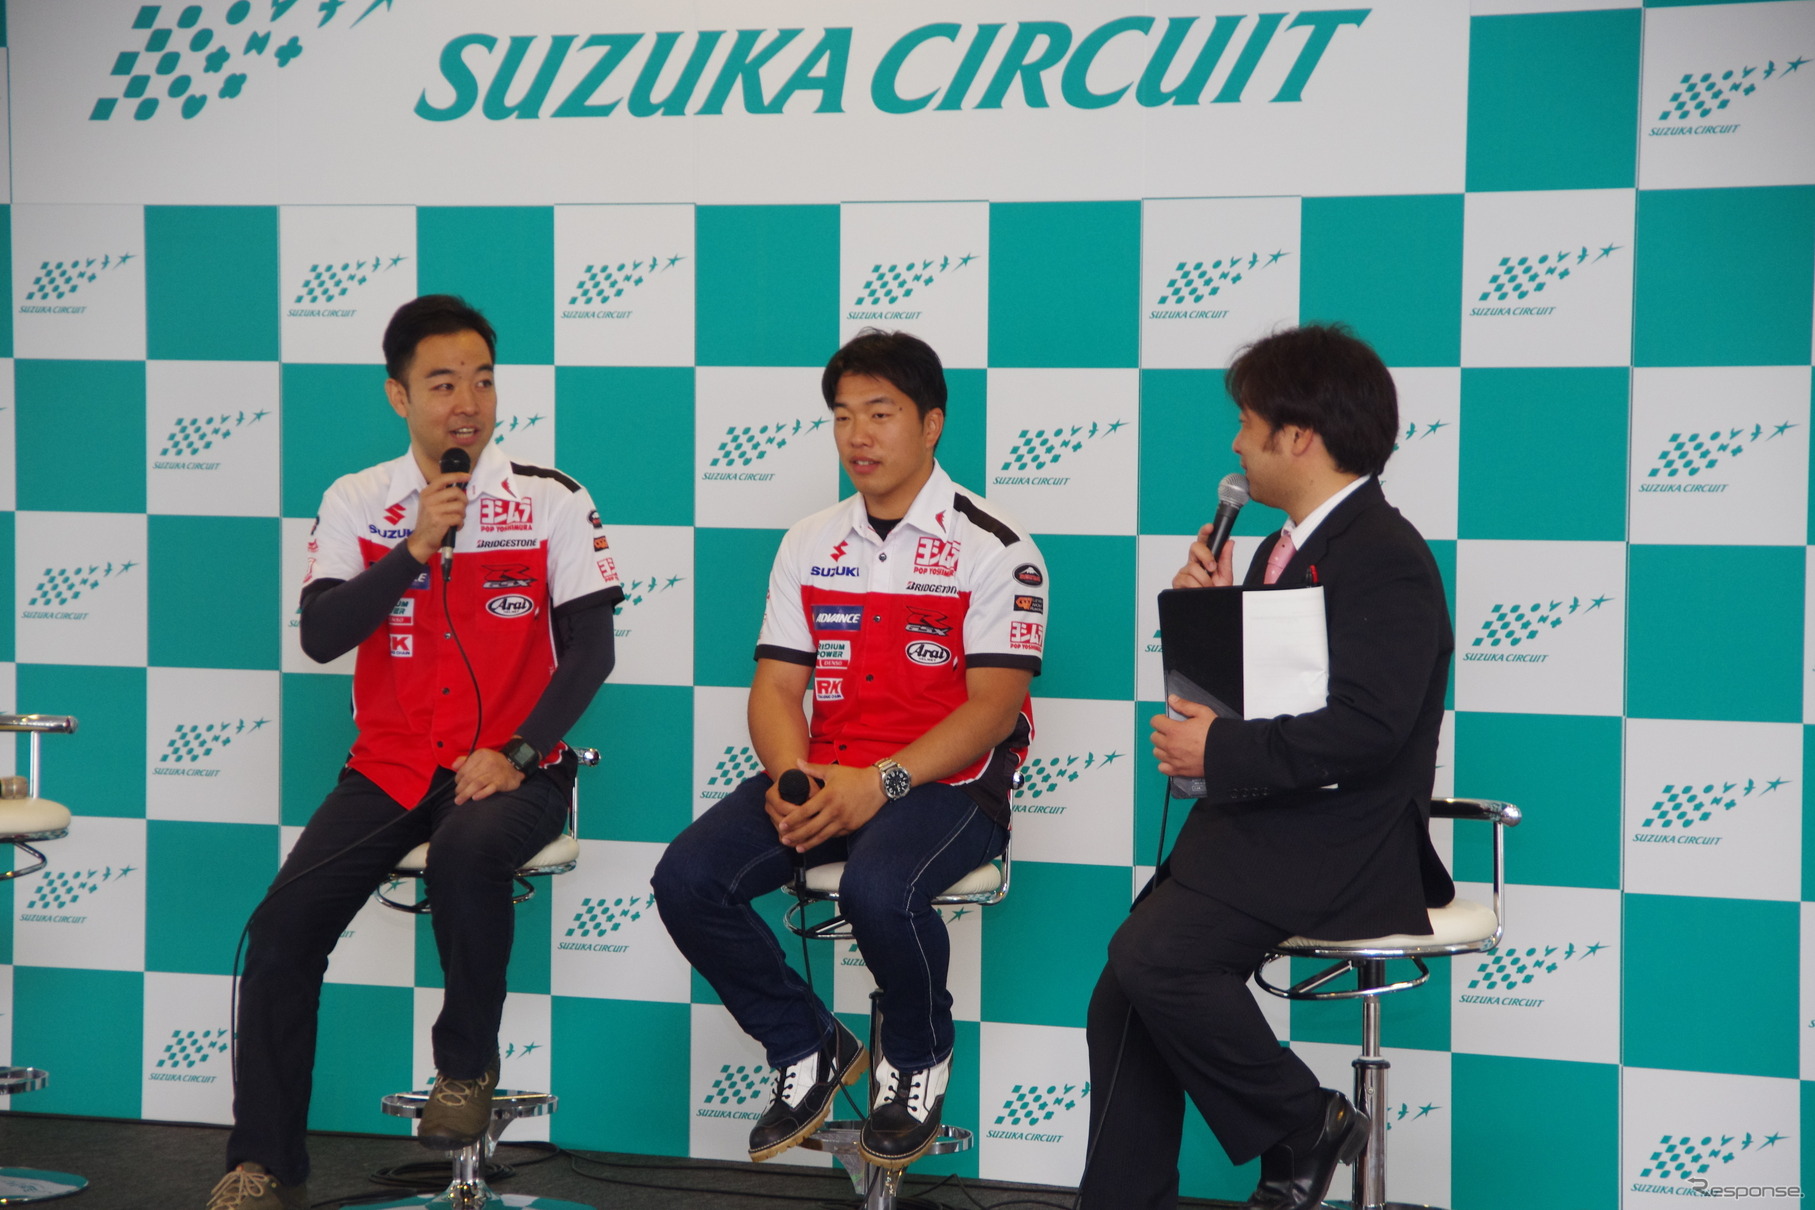 加藤監督、津田選手が登場し、8耐に向けての意気込みを語った。